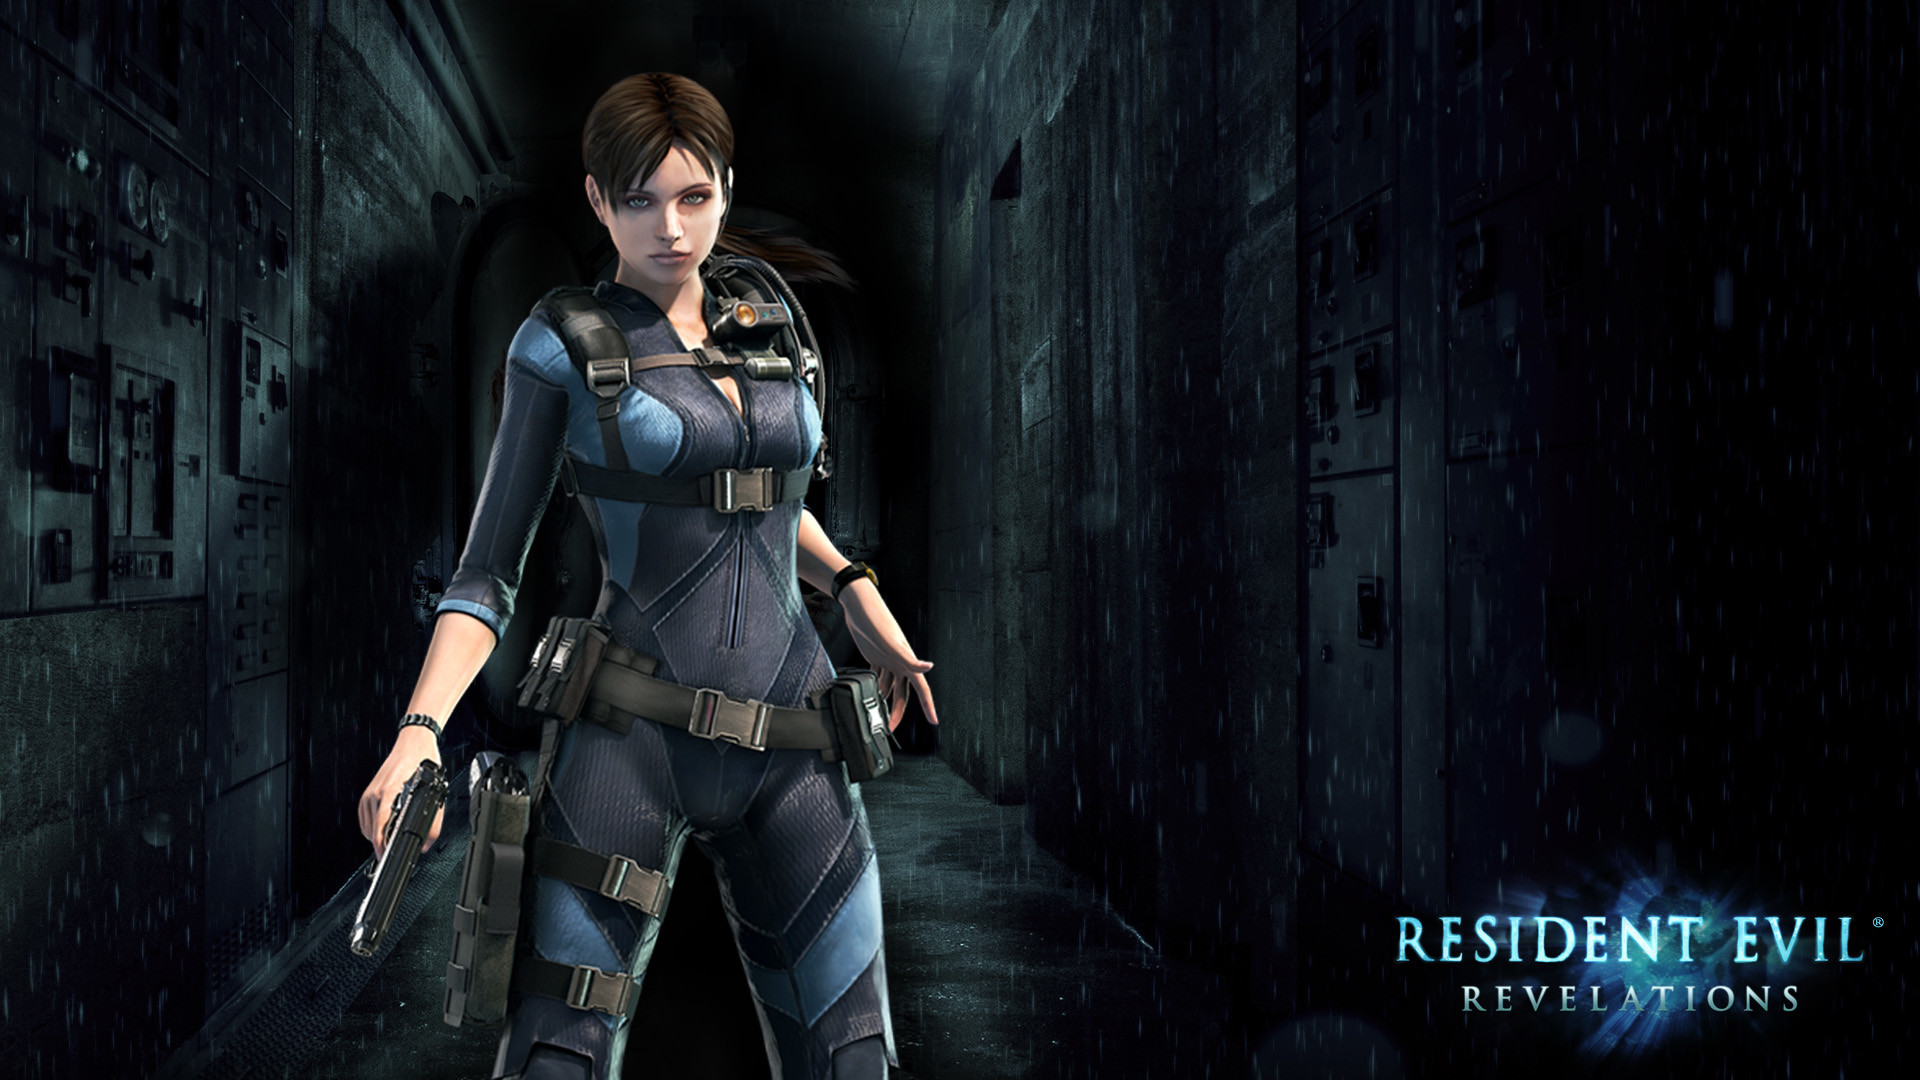 Resident Evil 5 Jill Valentine Wallpaper ·① Wallpapertag